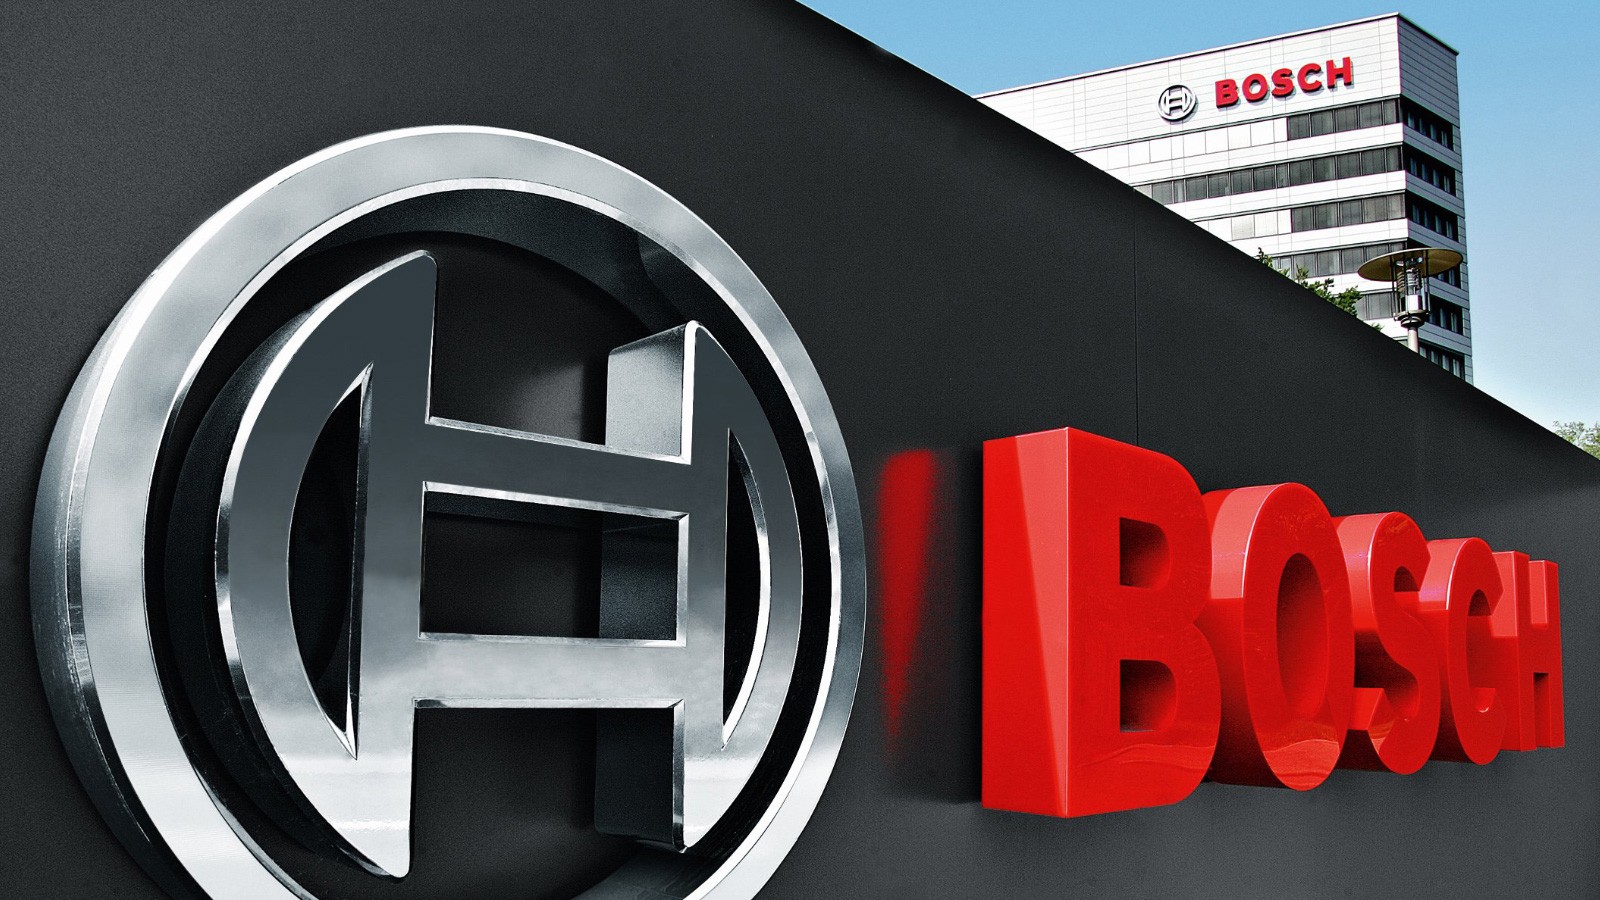 Bosch планирует закрыть завод в Мюнхене из-за перехода на электромобили